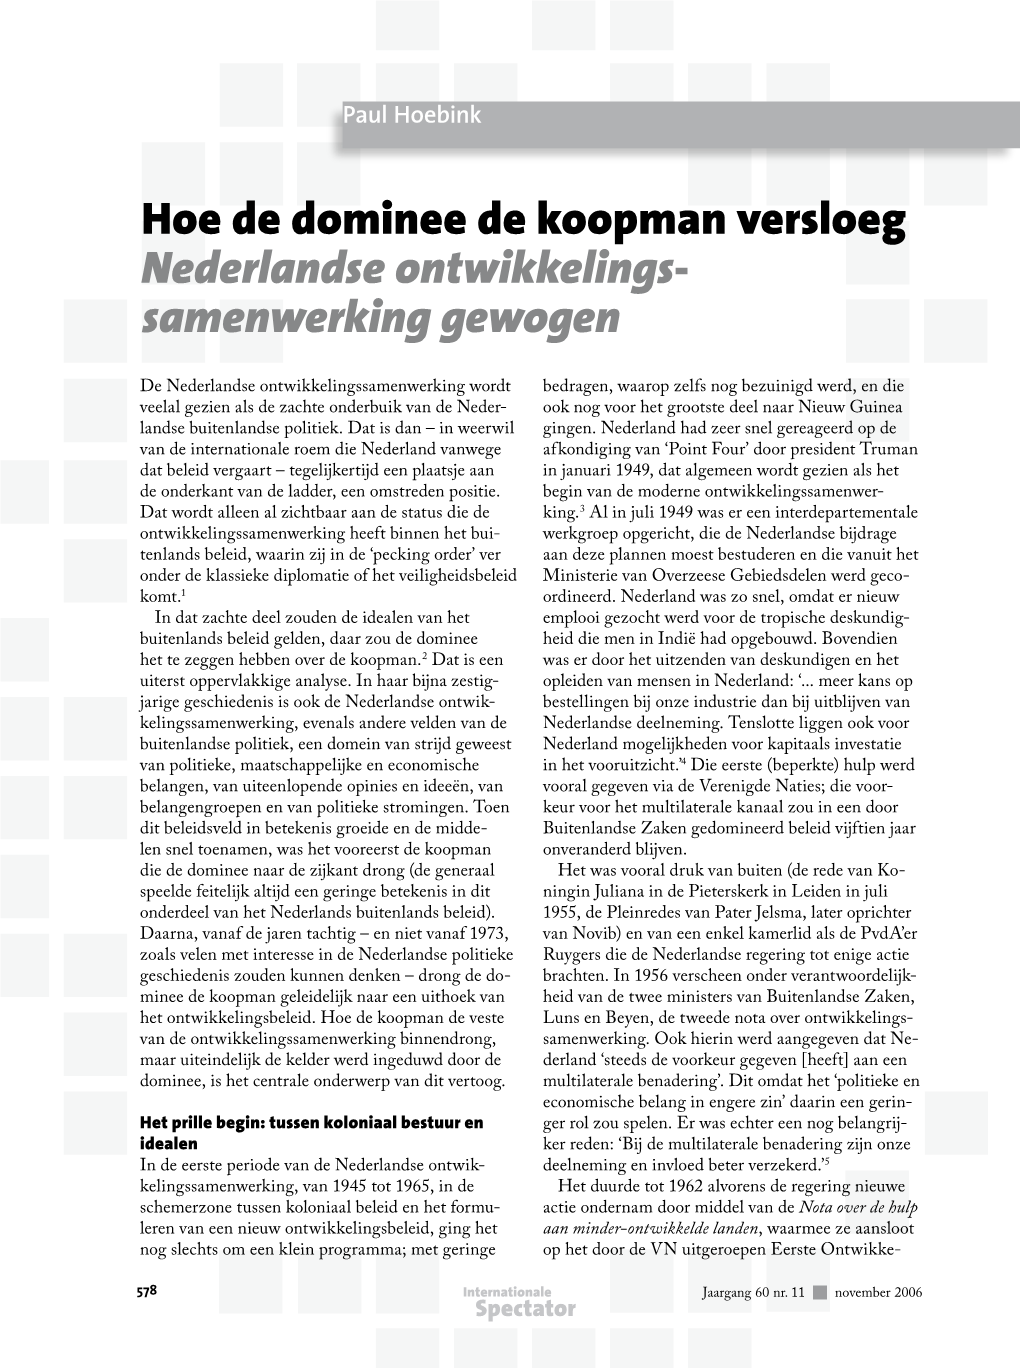 Hoe De Dominee De Koopman Versloeg Nederlandse Ontwikkelingssamenwerking Gewogen